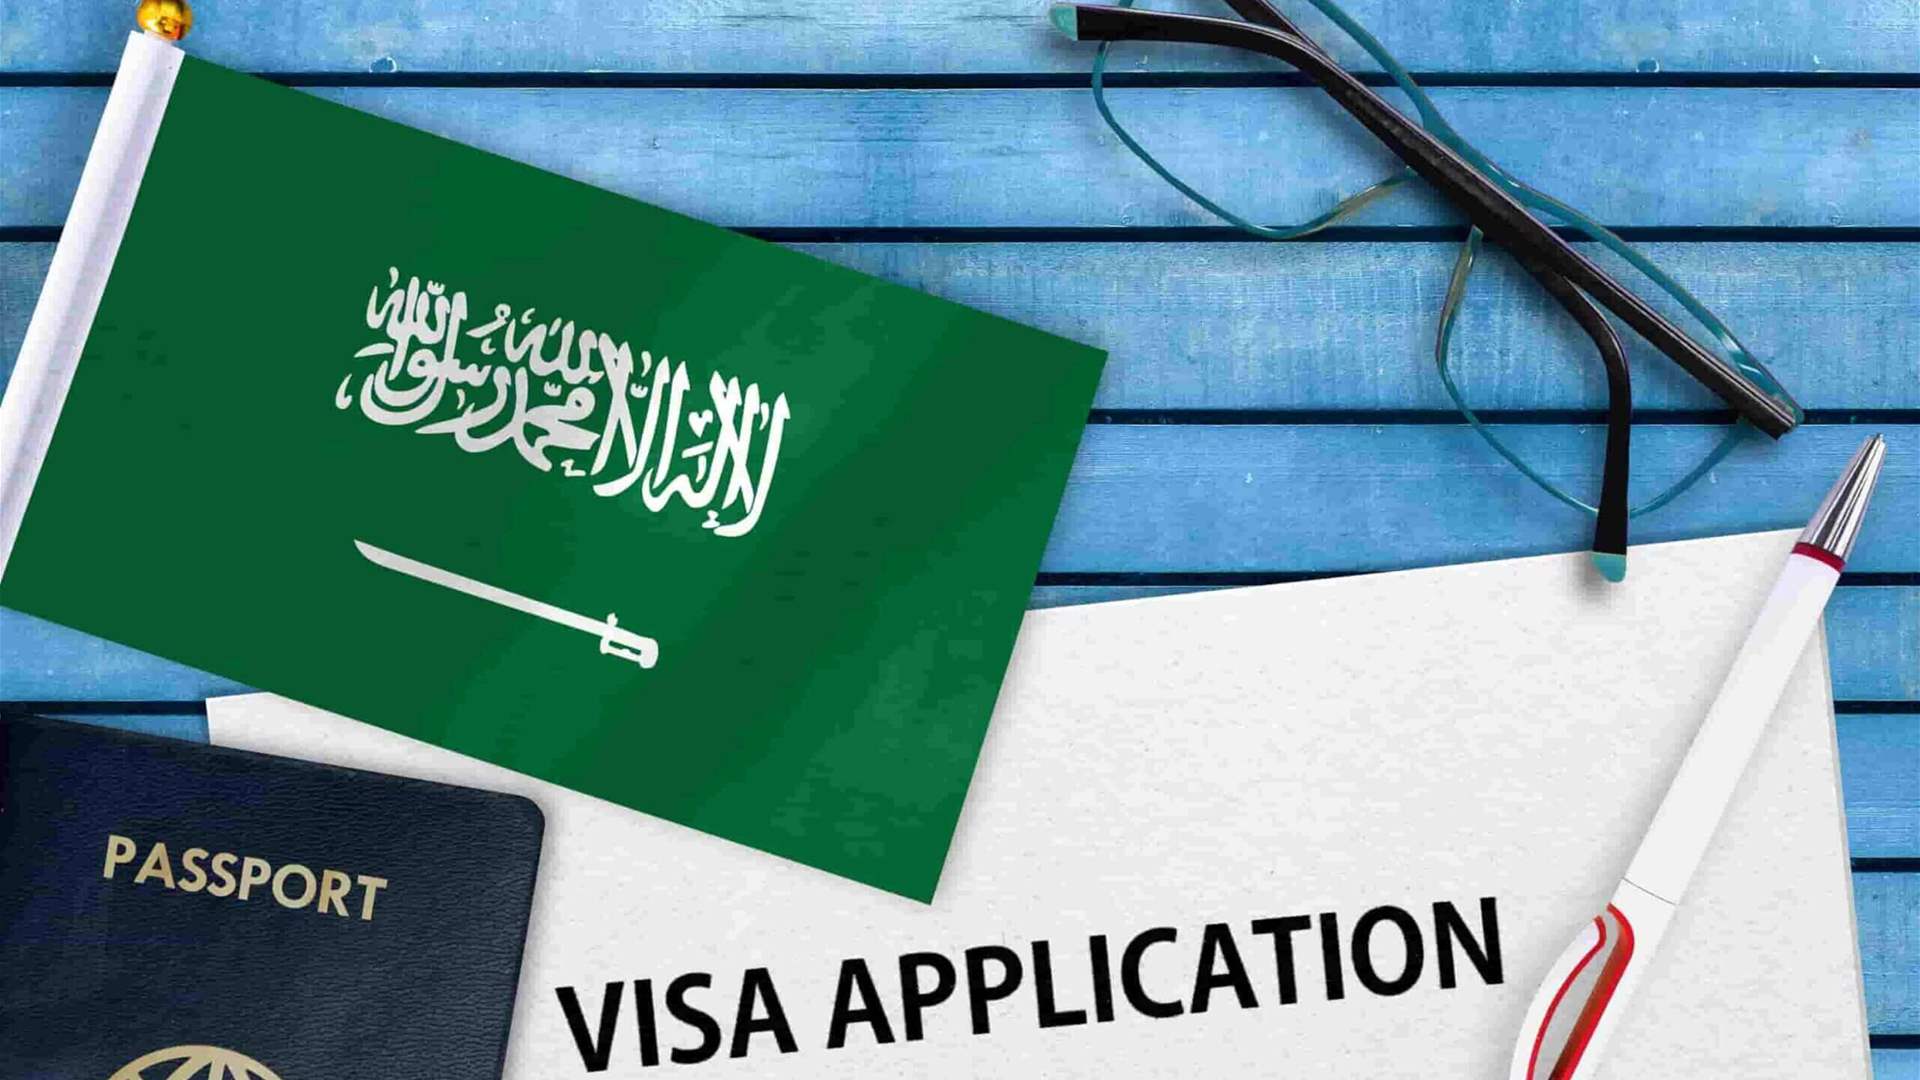 السعودية تعلن عن تسهيلات جديدة للحصول على تأشيرة السياحة إلى المملكة